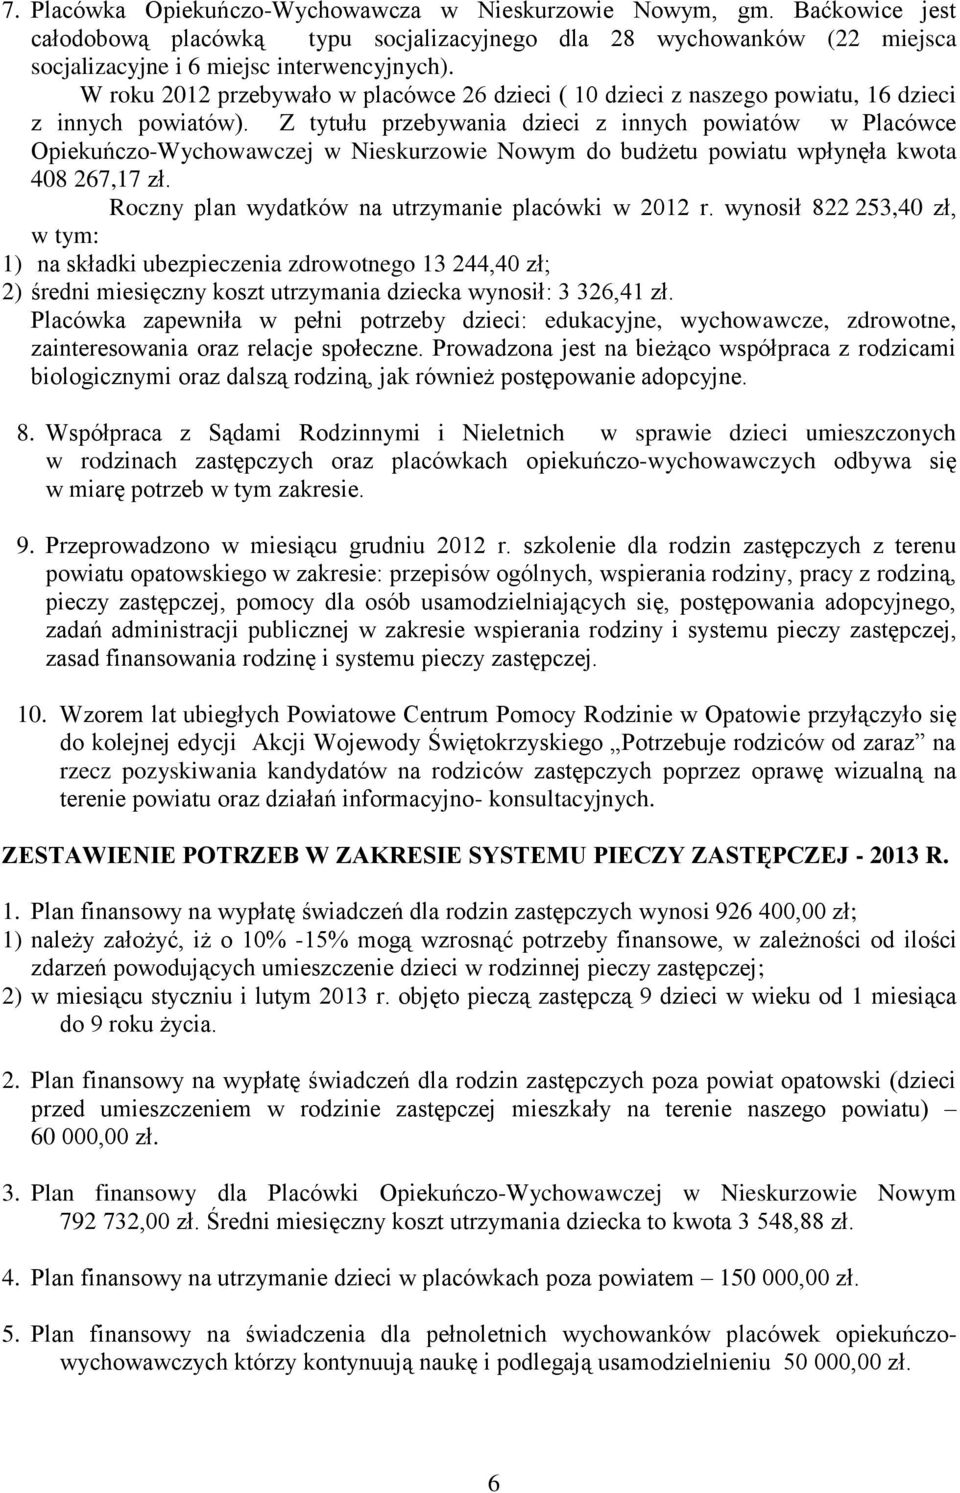 Z tytułu przebywania dzieci z innych powiatów w Placówce Opiekuńczo-Wychowawczej w Nieskurzowie Nowym do budżetu powiatu wpłynęła kwota 408 267,17 zł.